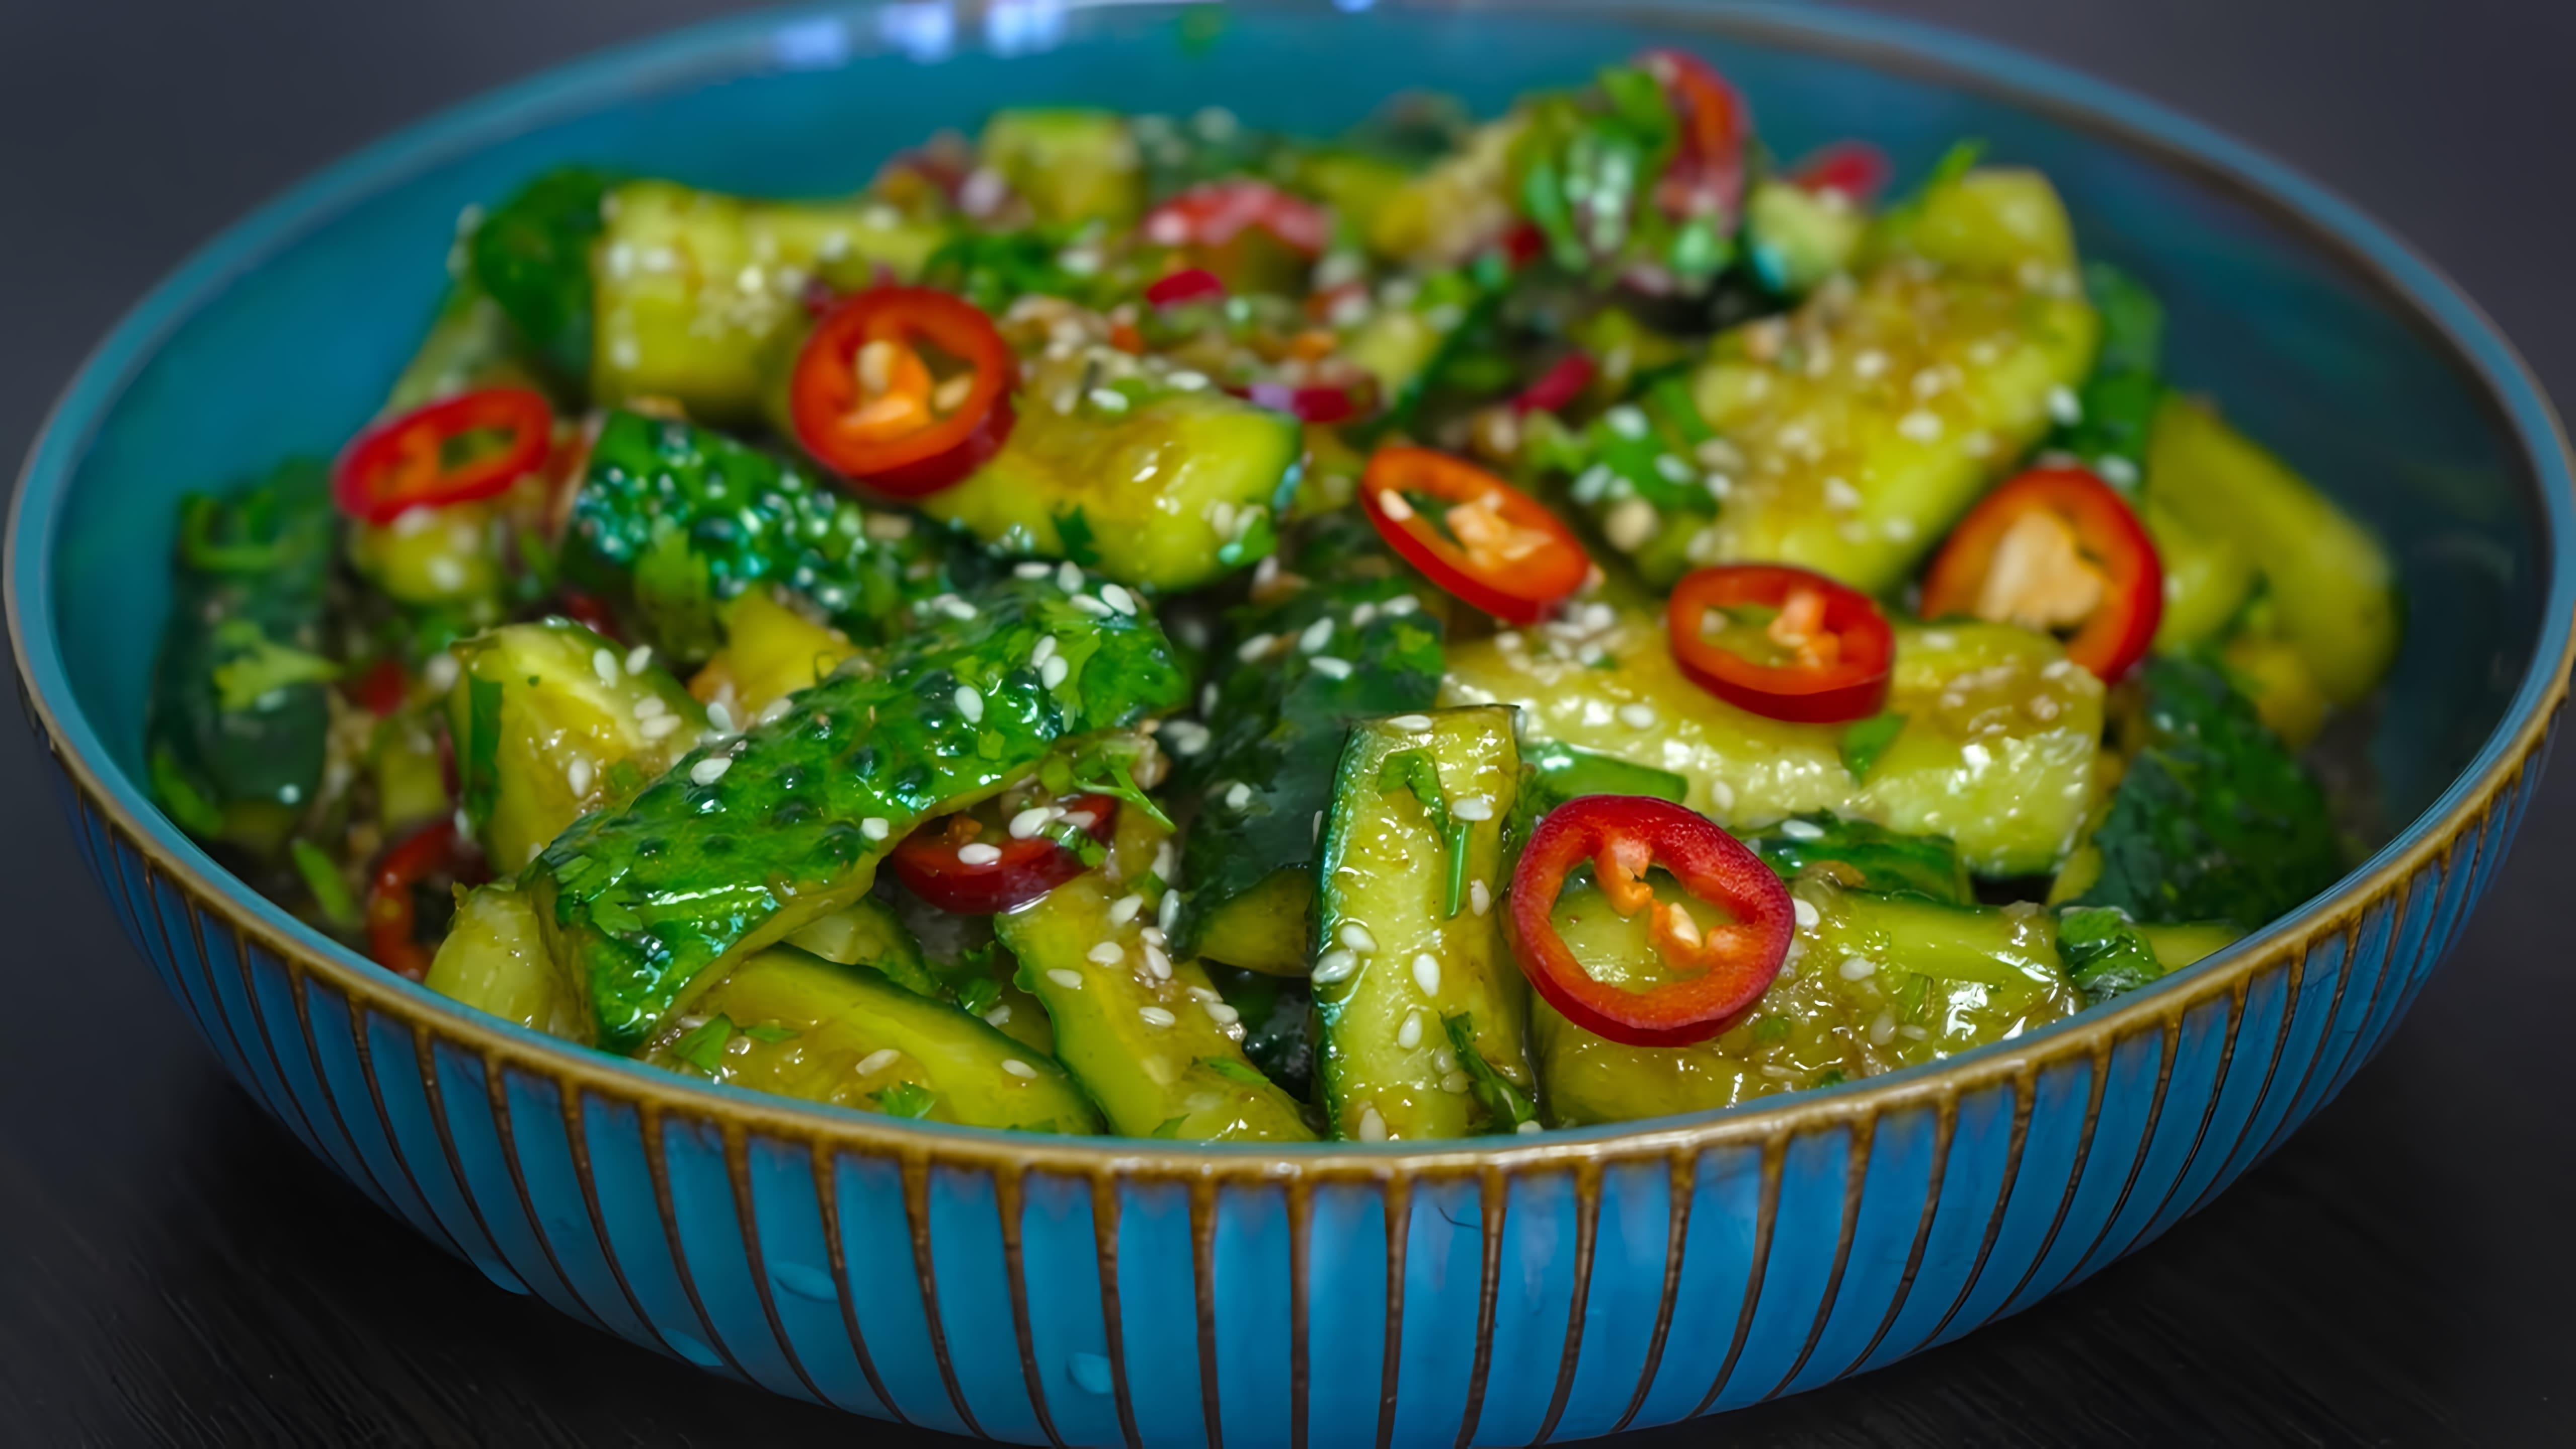 В этом видео демонстрируется рецепт салата из огурцов с китайским акцентом